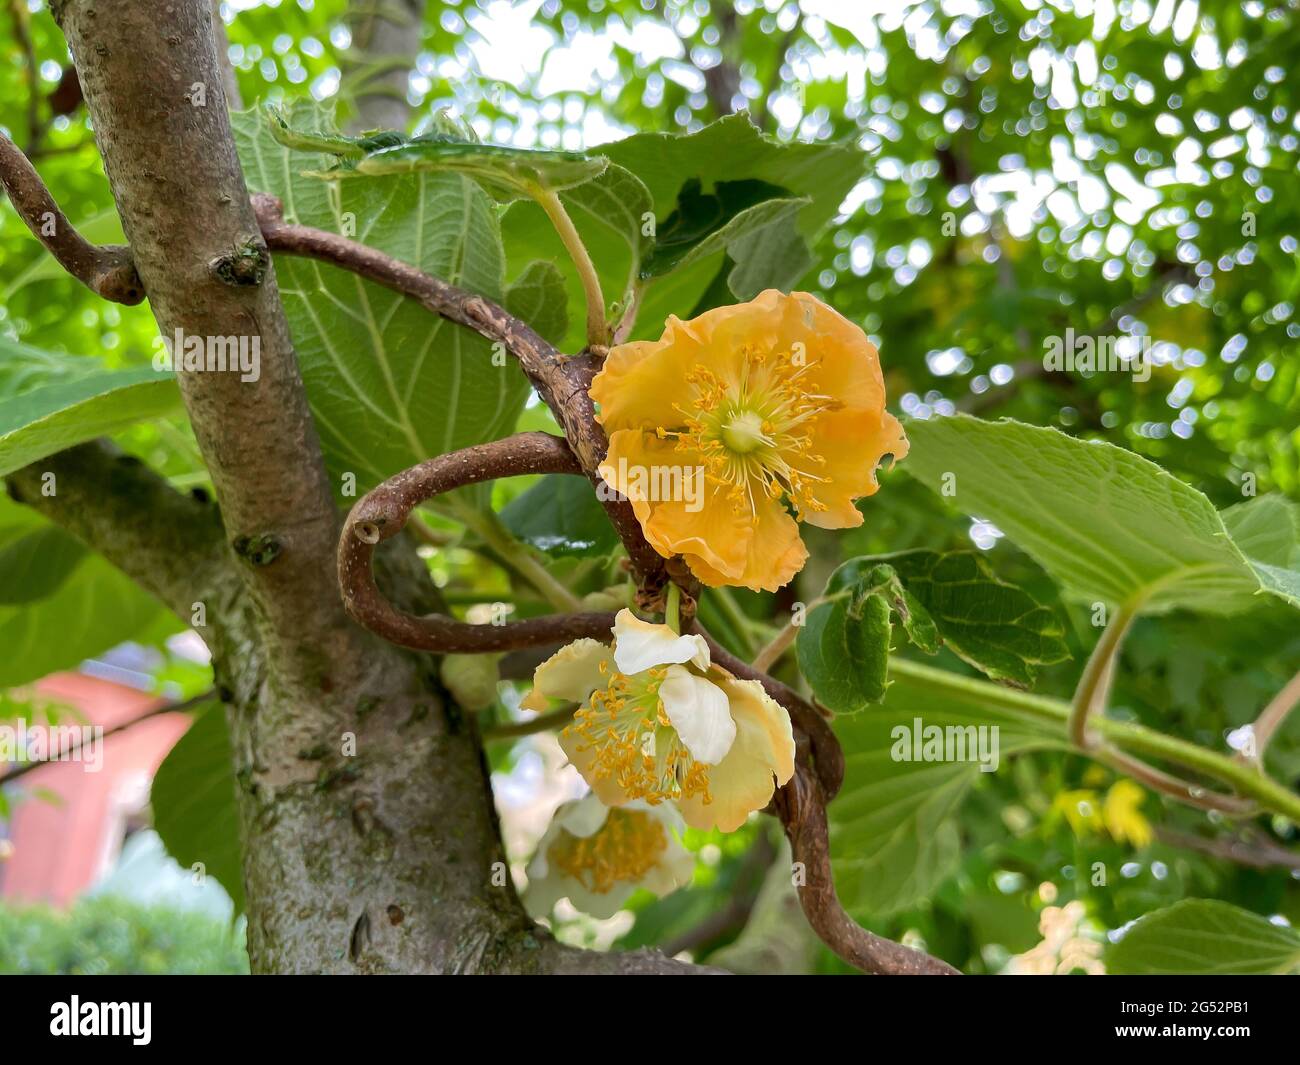 Kiwi blossom on a tree Stock Photo